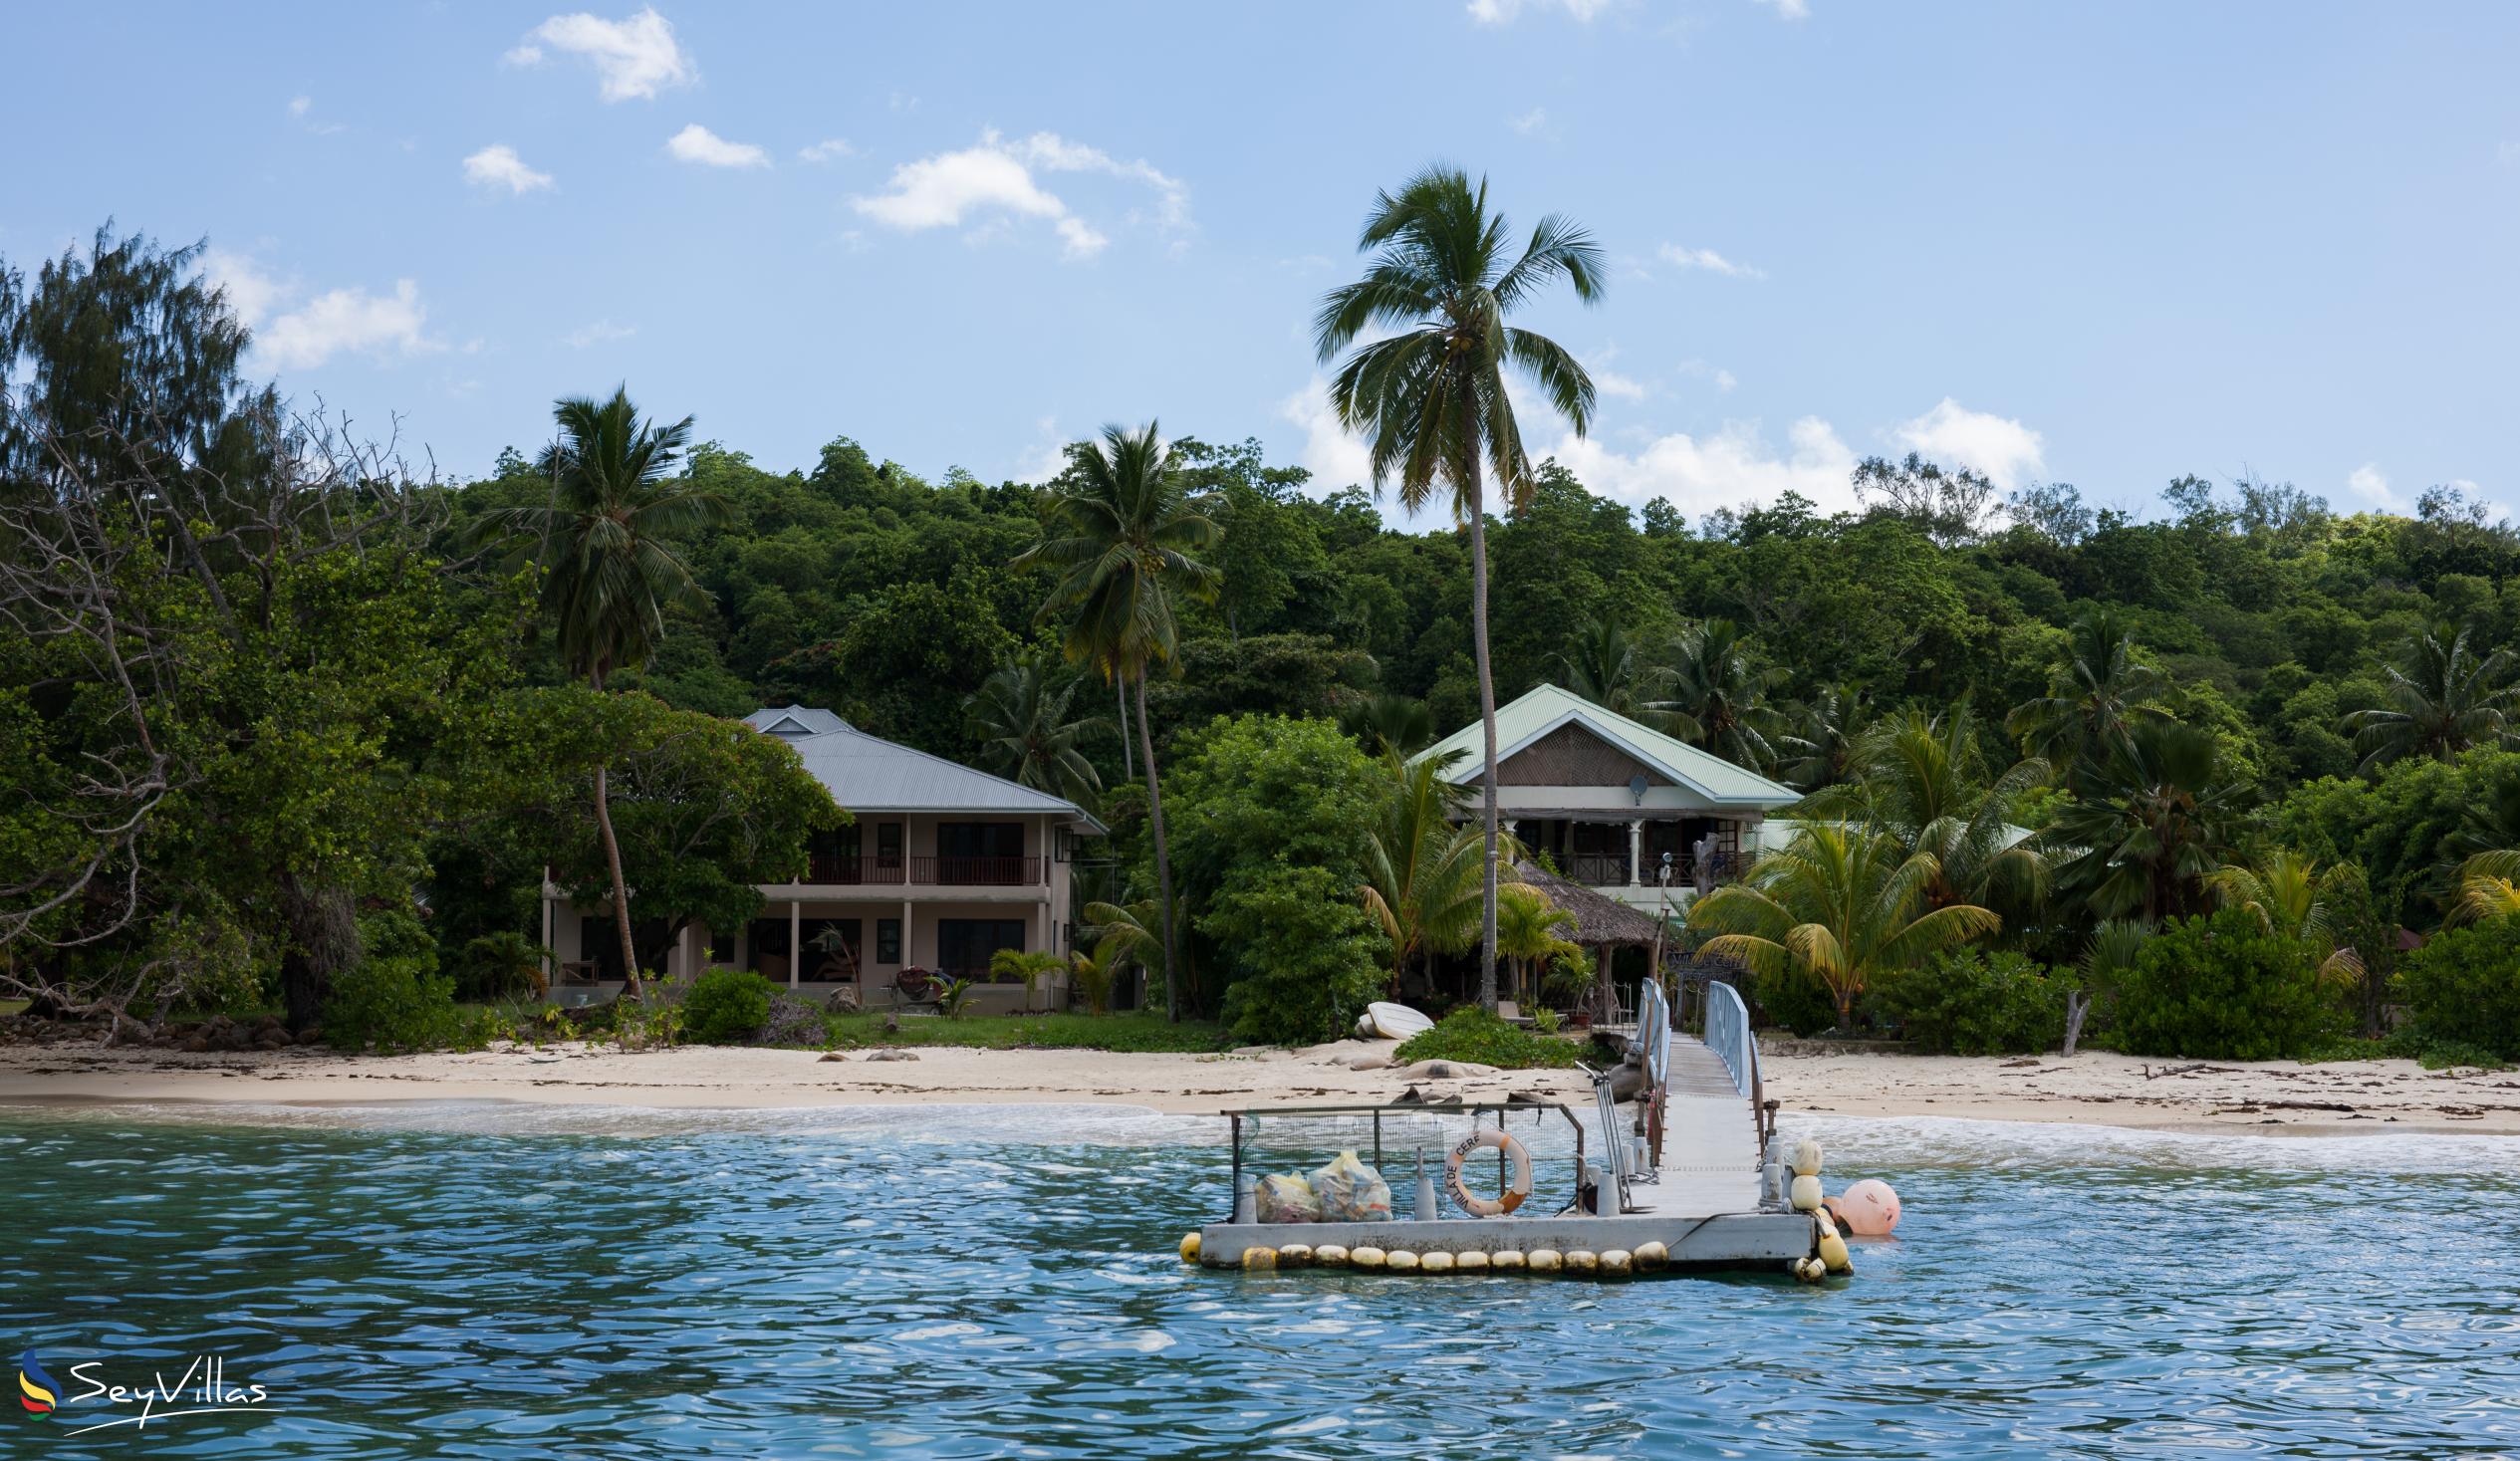 Foto 46: Villa de Cerf - Aussenbereich - Cerf Island (Seychellen)